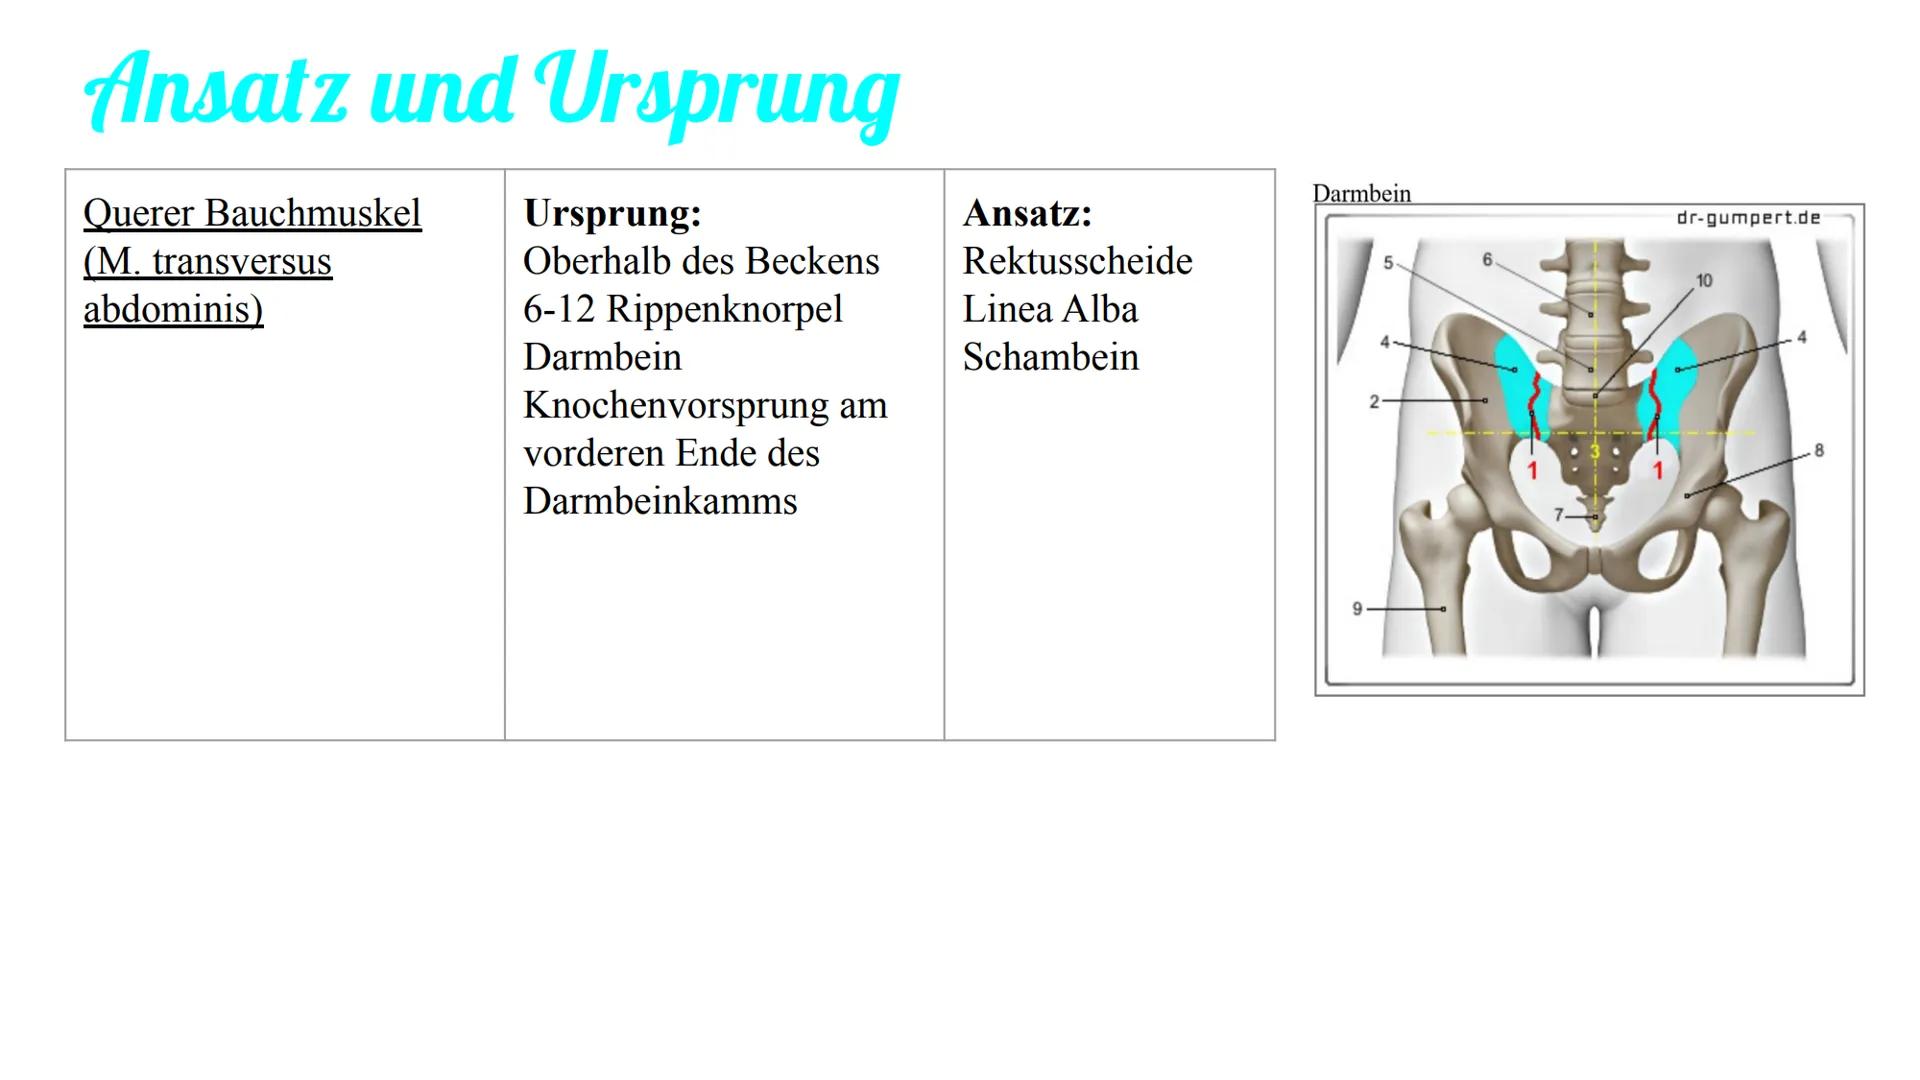 Bauchmuskulatur
Präsentation von Antonia, Emily & Kaya Inhaltsverzeichnis
1. Welche Bauchmuskeln gibt es ? (Antonia)
2. Anatomie (Kaya)
3. A